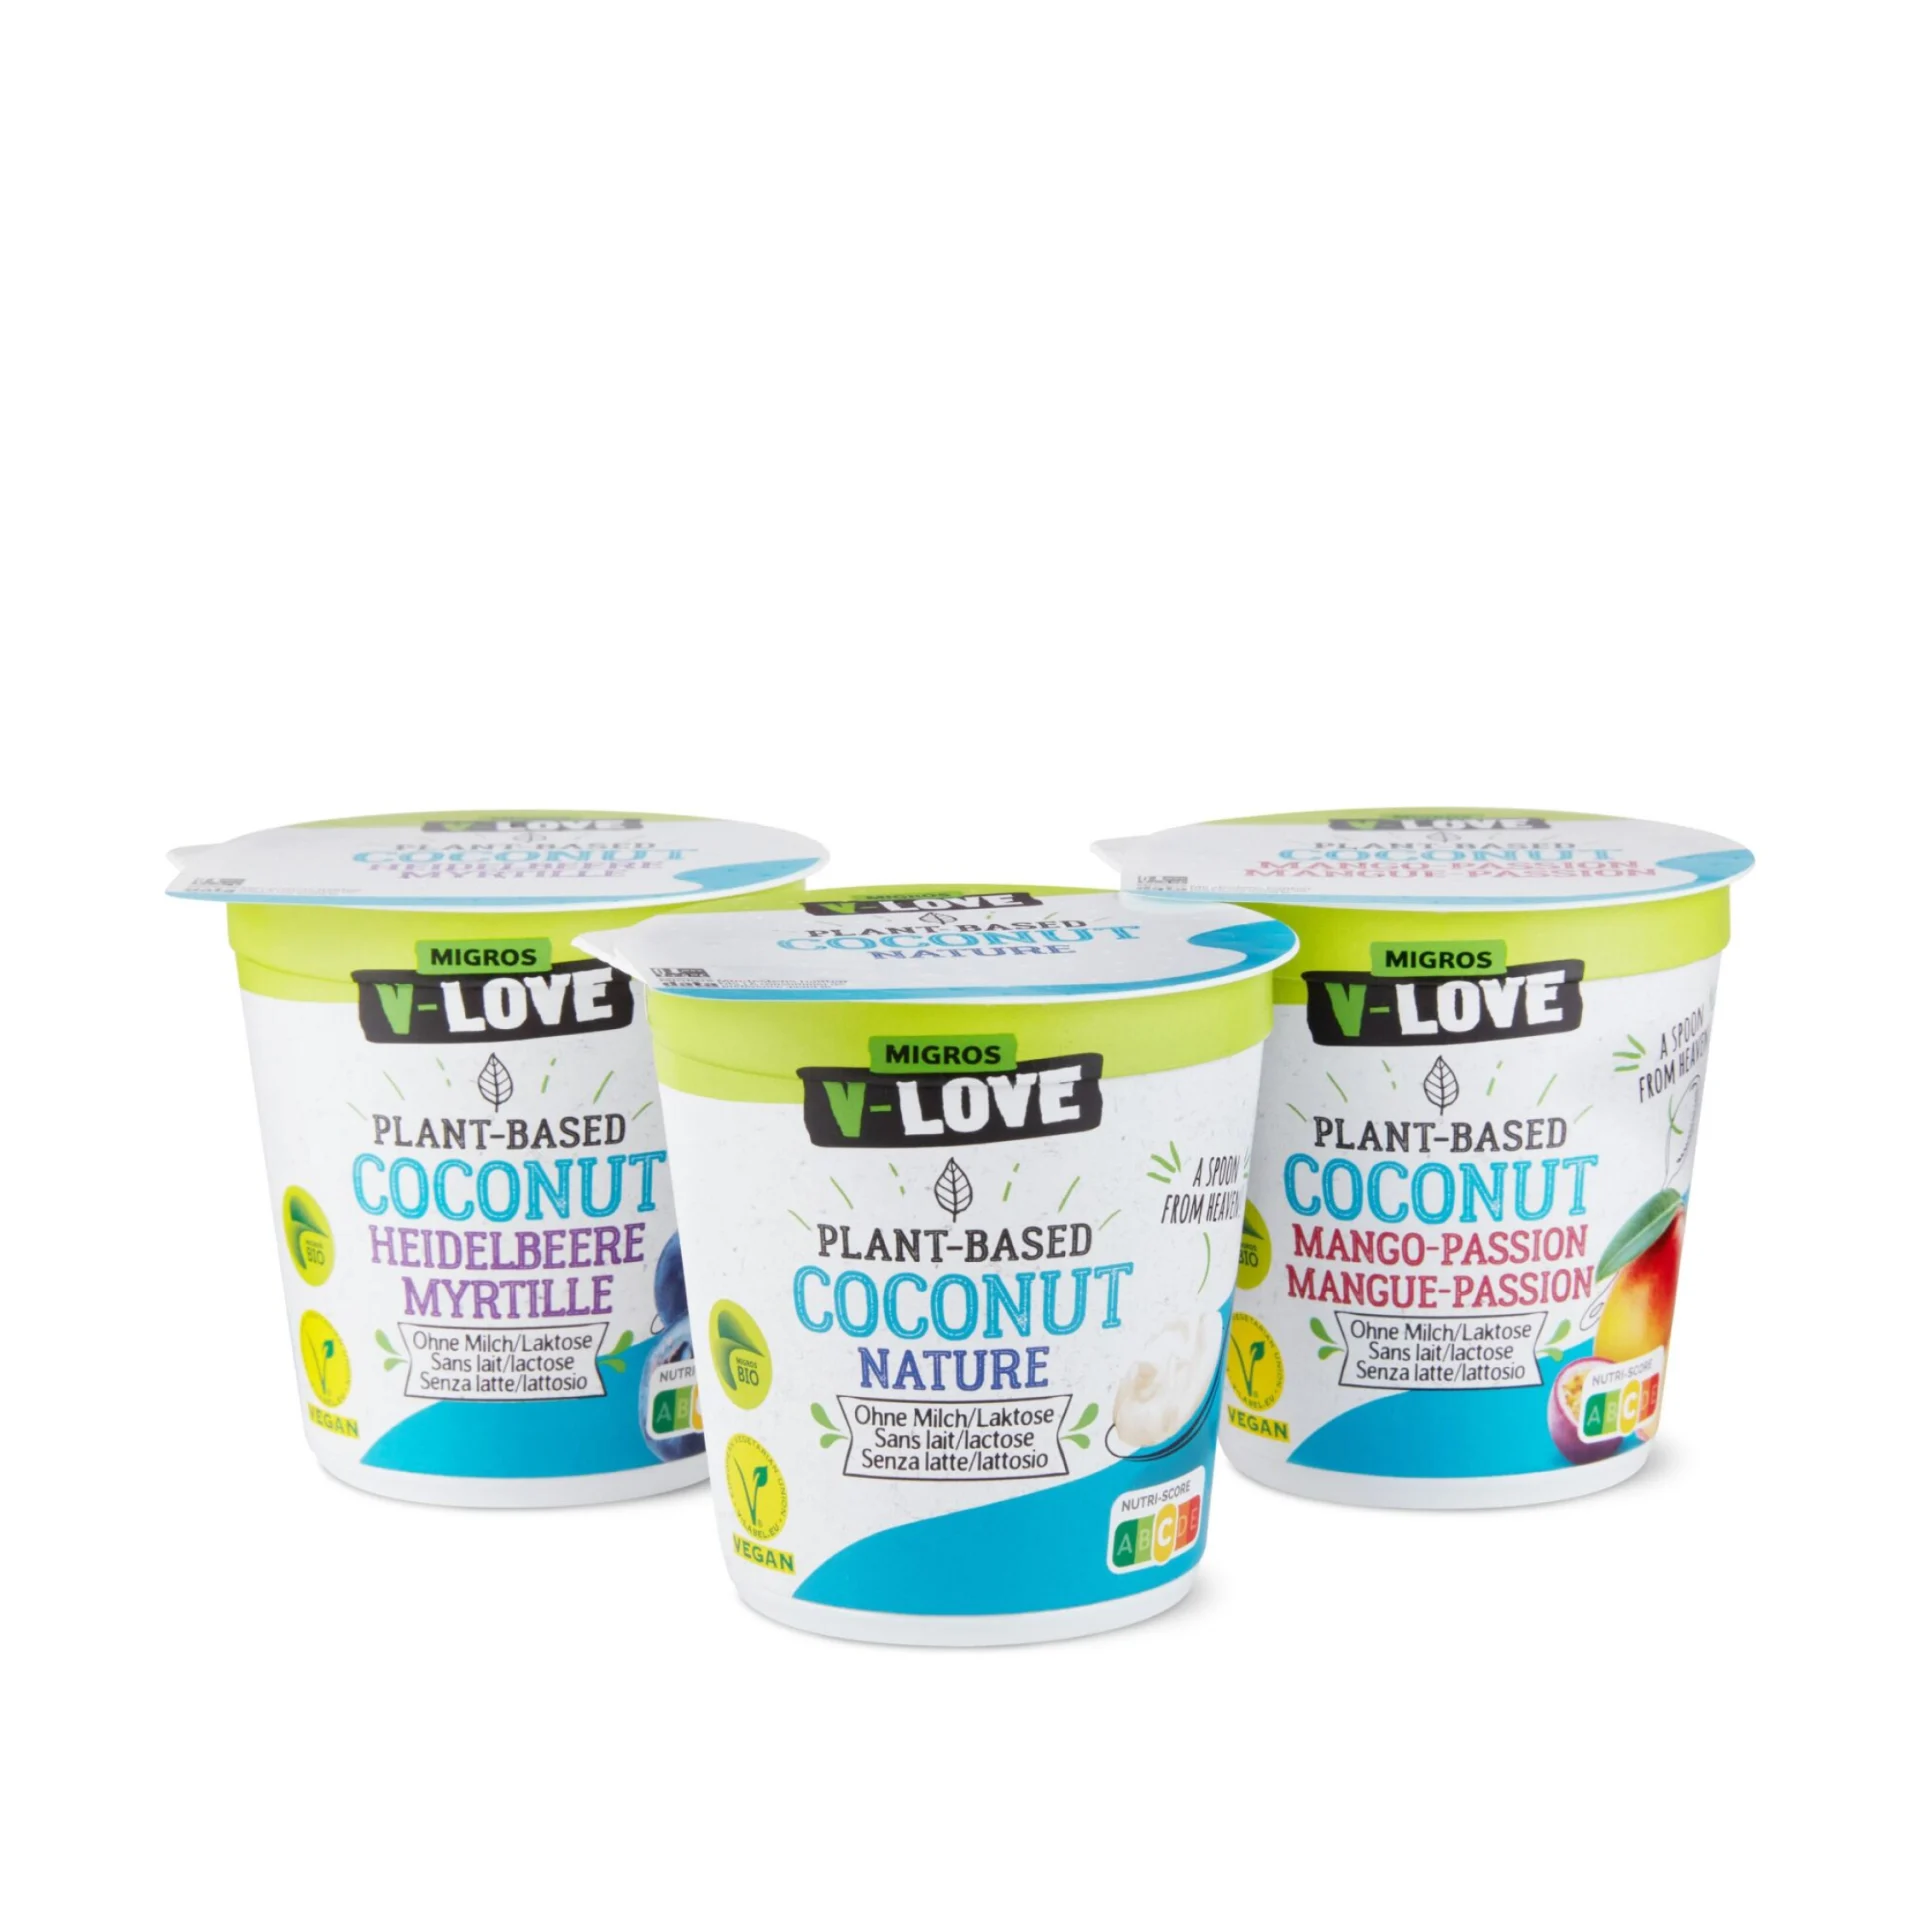 Drei Packsots von unterschiedlichen V-Love Joghurt-Alternativen.